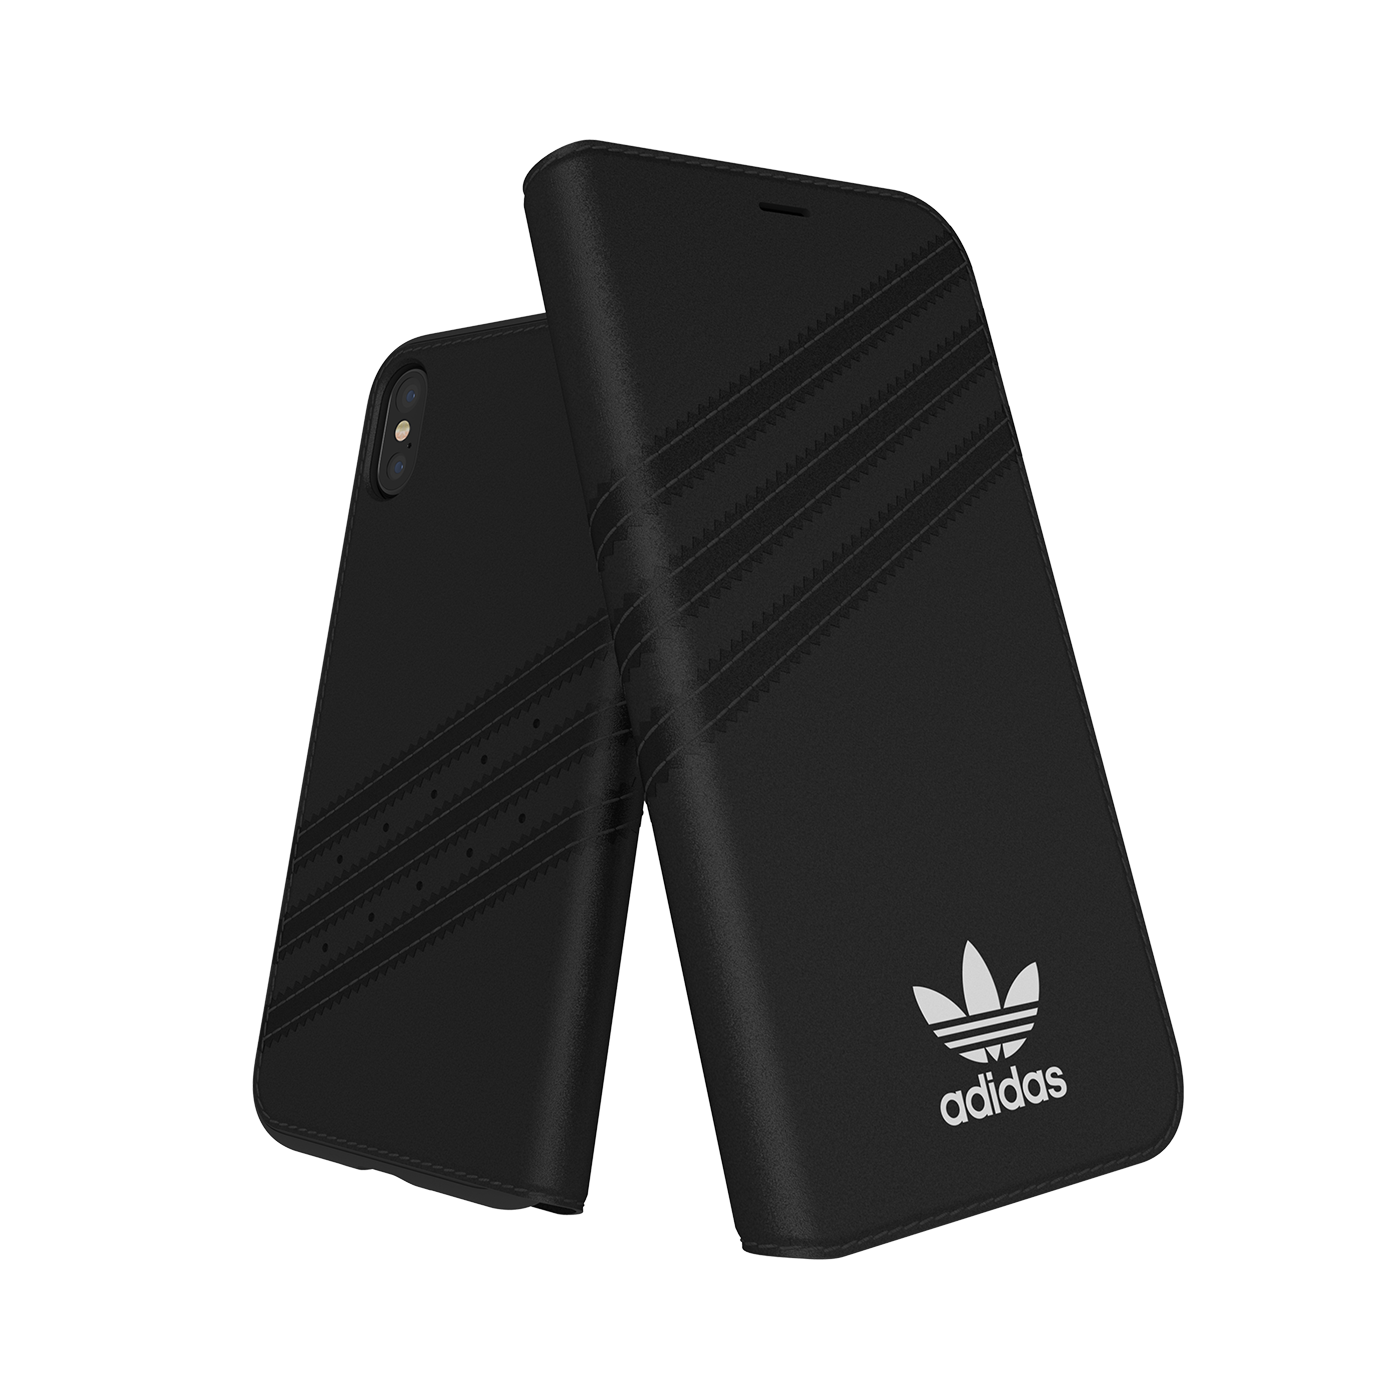 adidas Originals 3-Stripes Booklet Case Black iPhone 2 28601